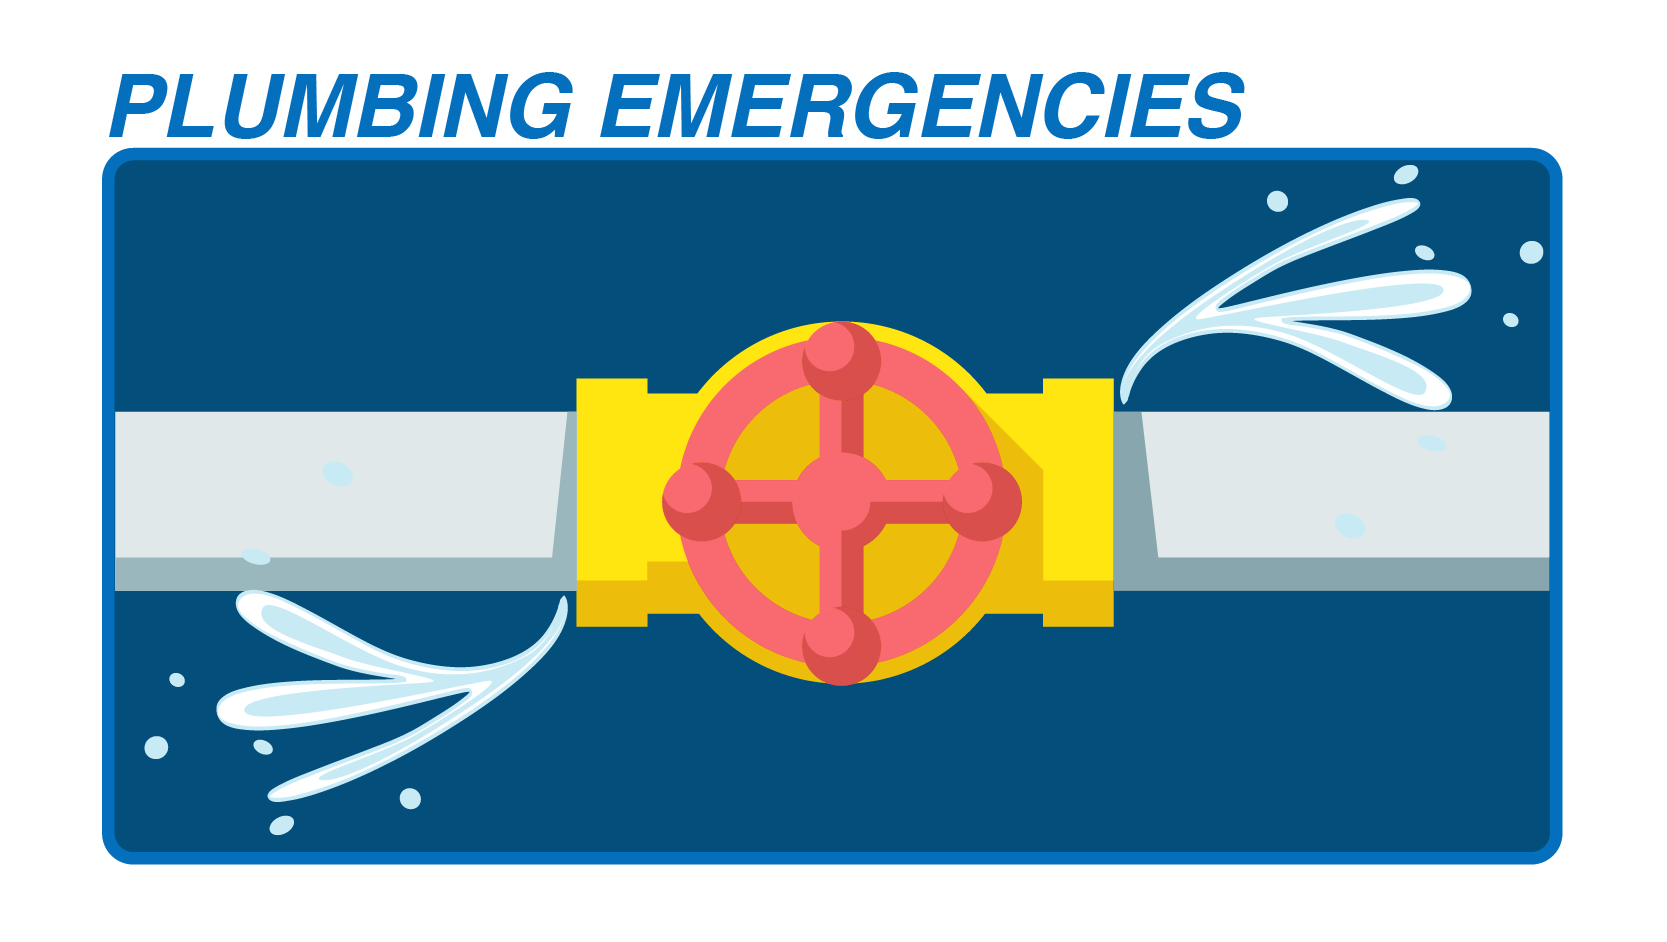 Plumbing Emergency